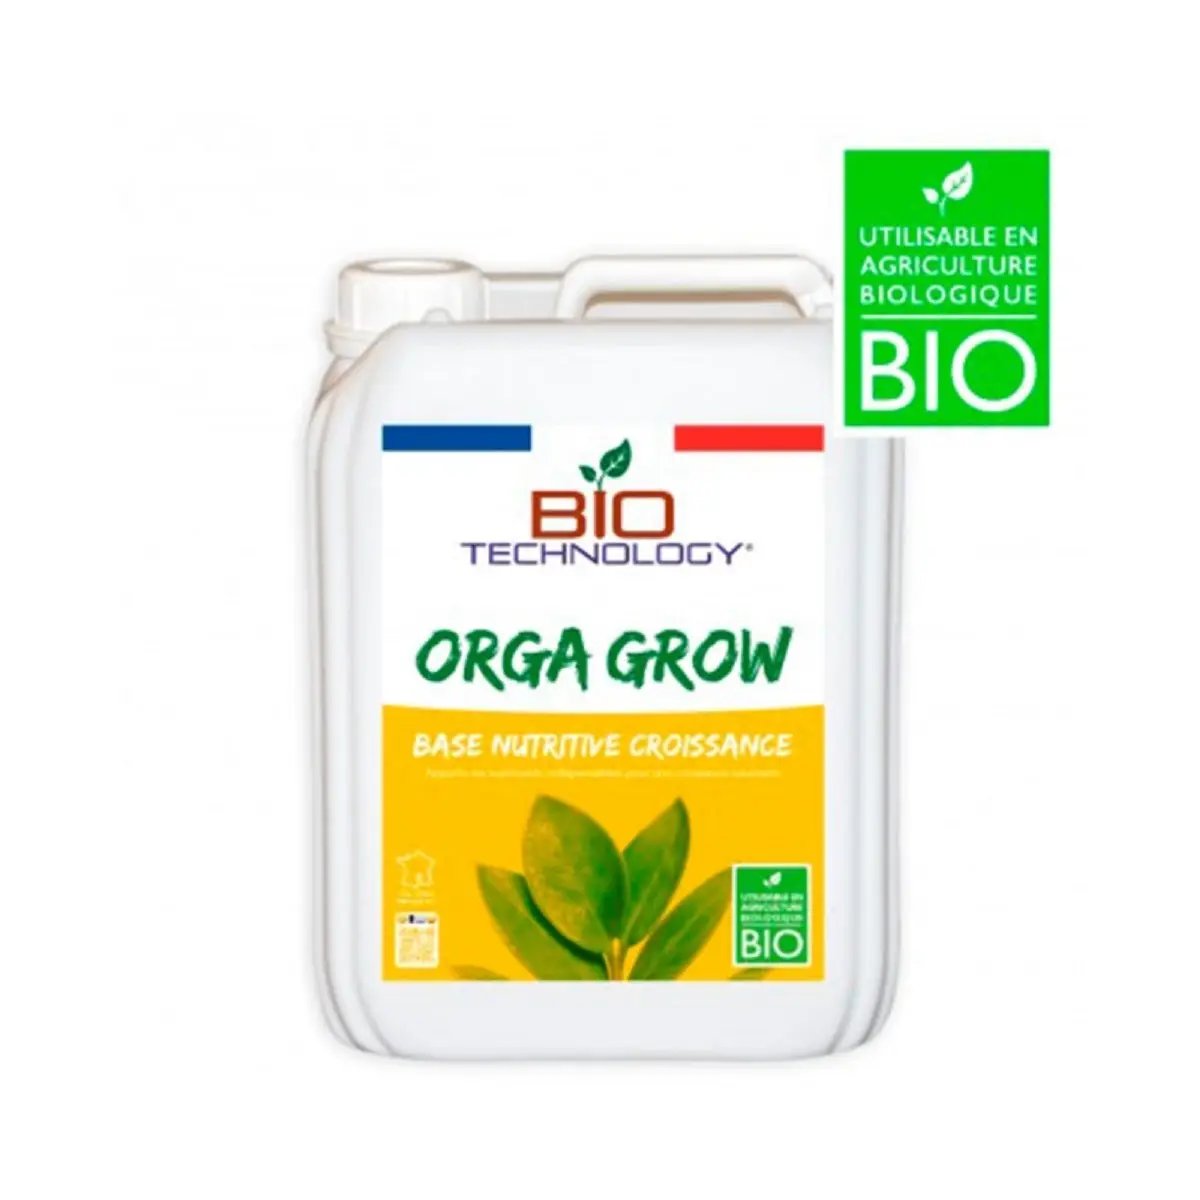 Engrais de croissance organique Bio Technology Orga Grow 5 litres